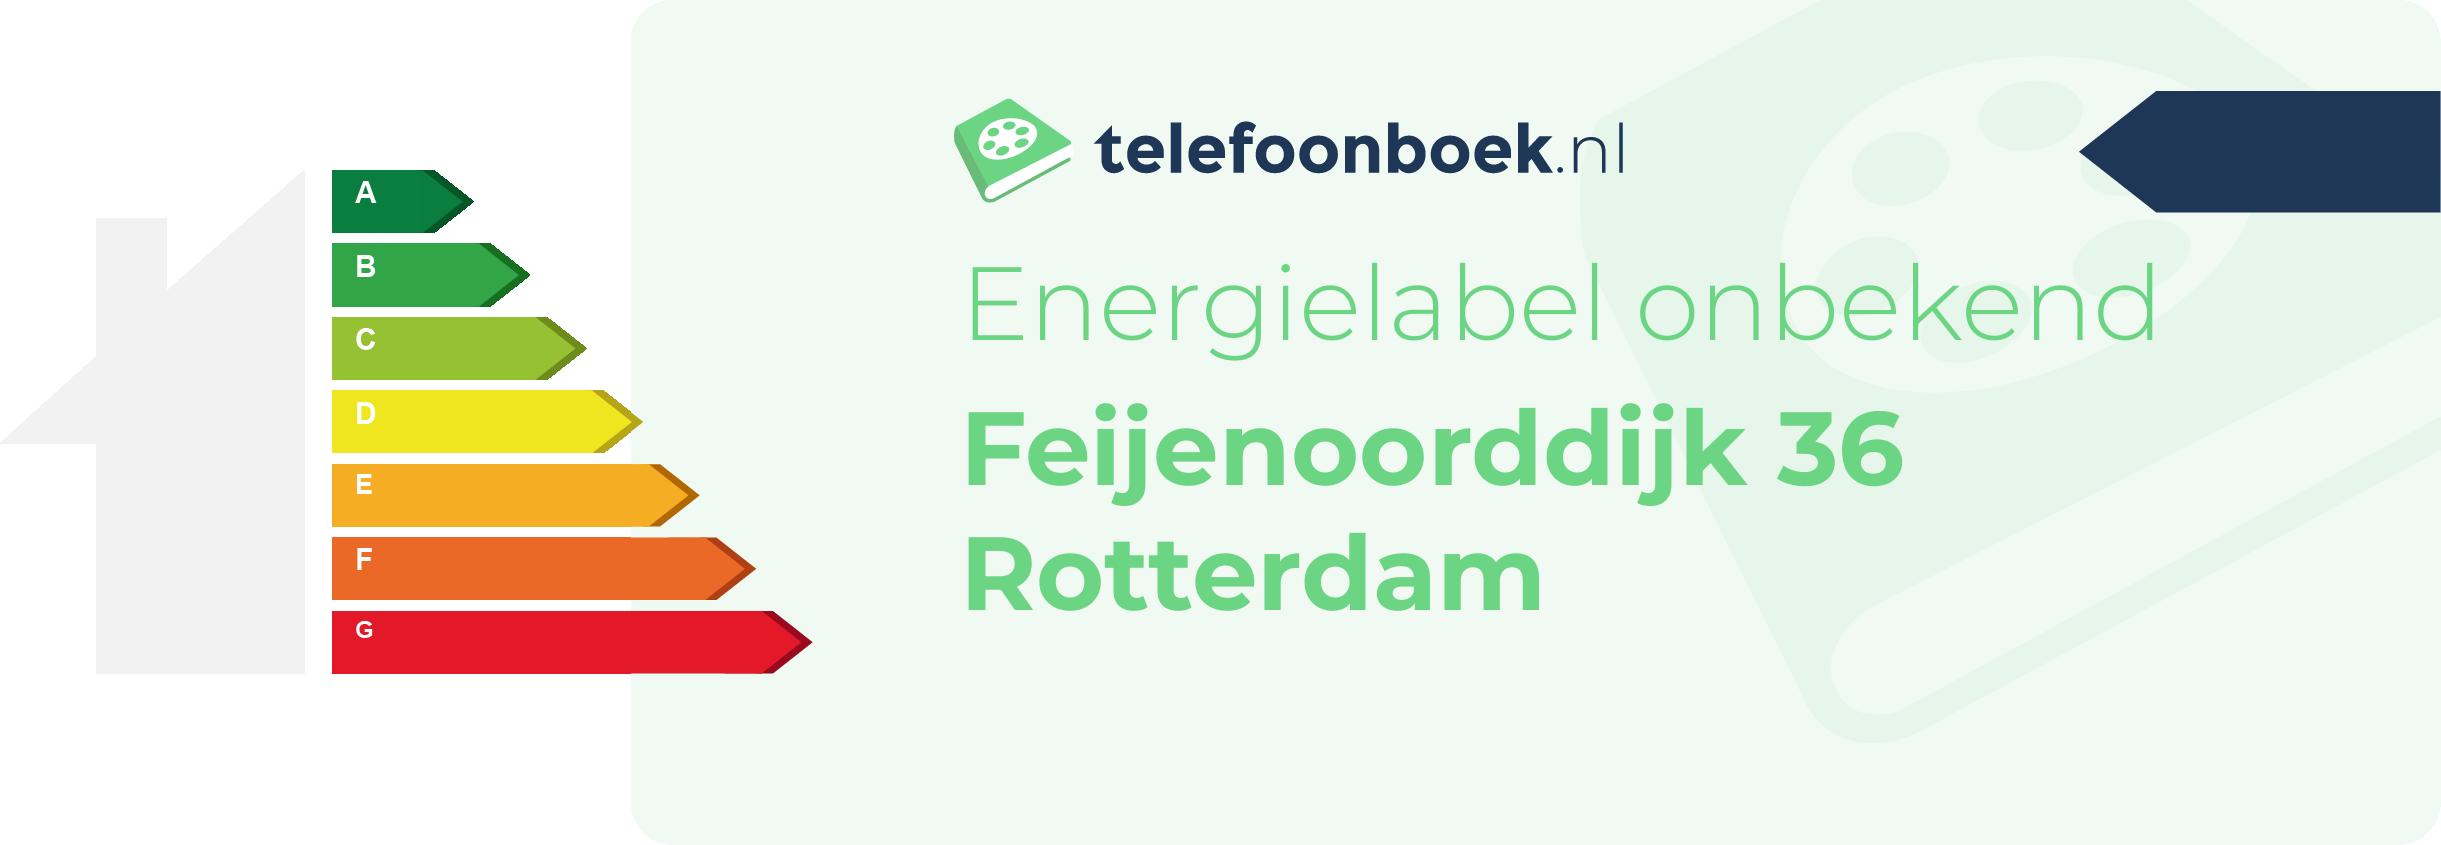 Energielabel Feijenoorddijk 36 Rotterdam